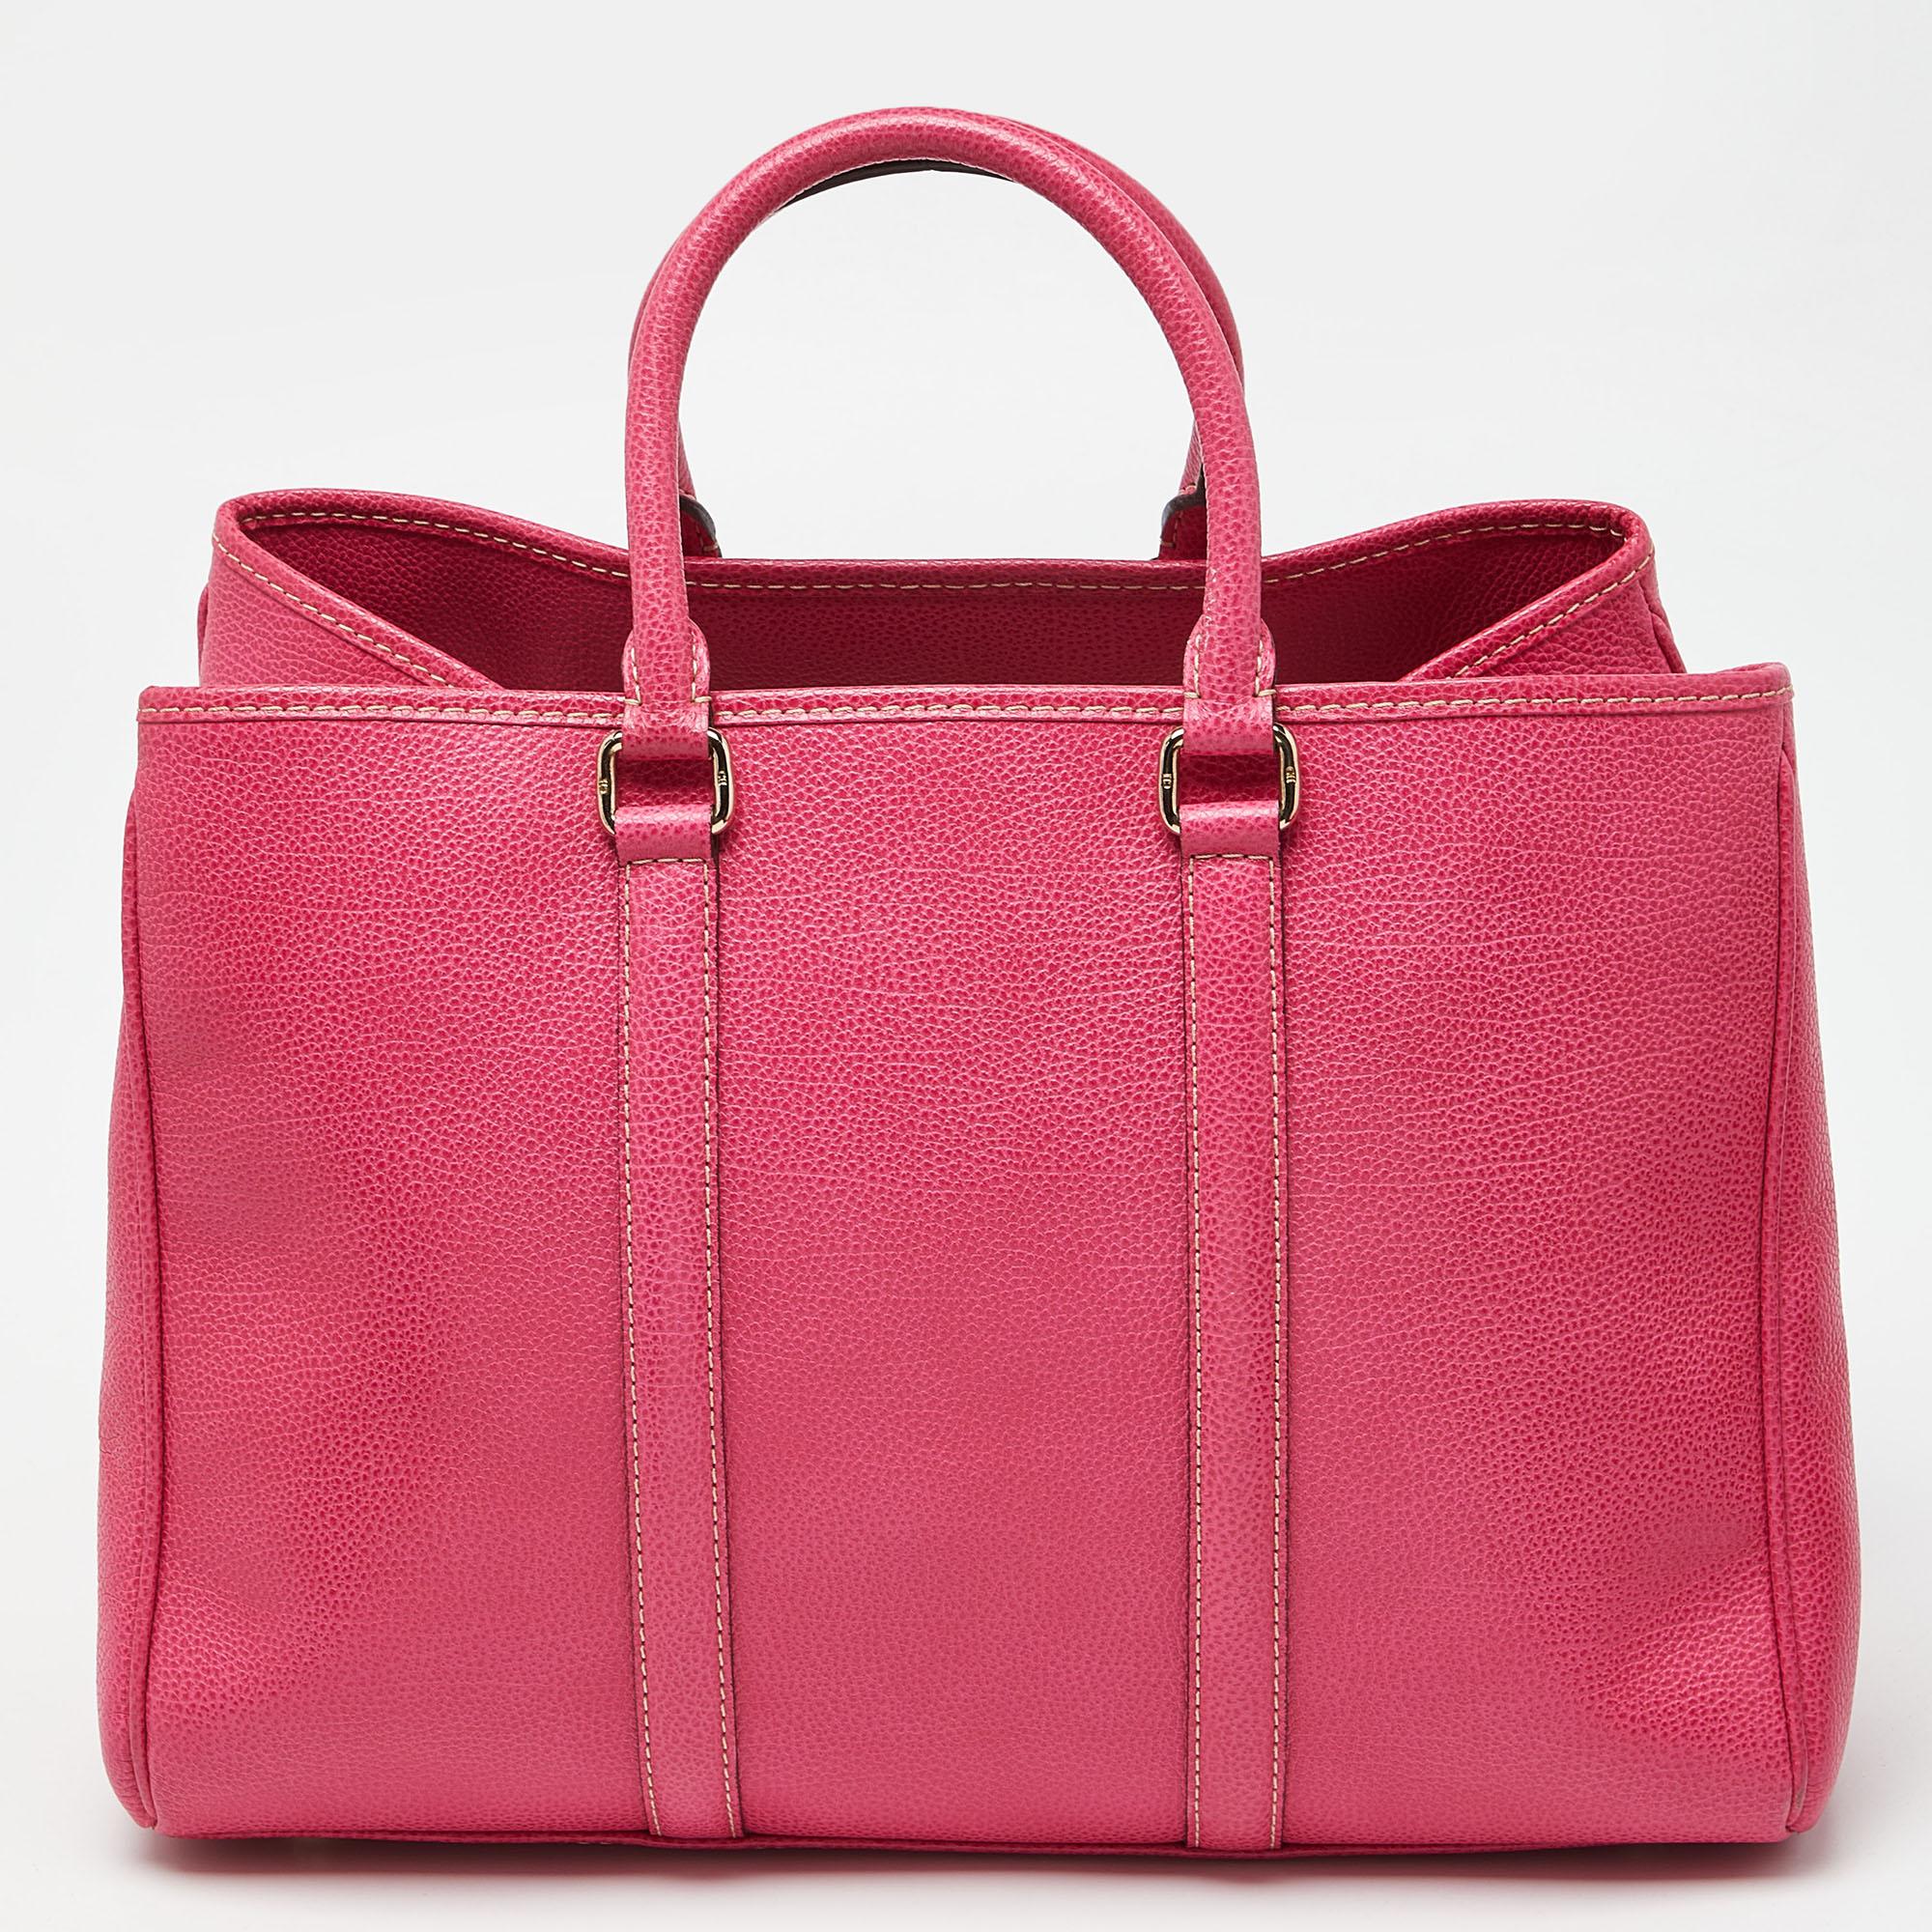 CH Carolina Herrera Pink Grained Leather Matteo Tote In Good Condition For Sale In Dubai, Al Qouz 2